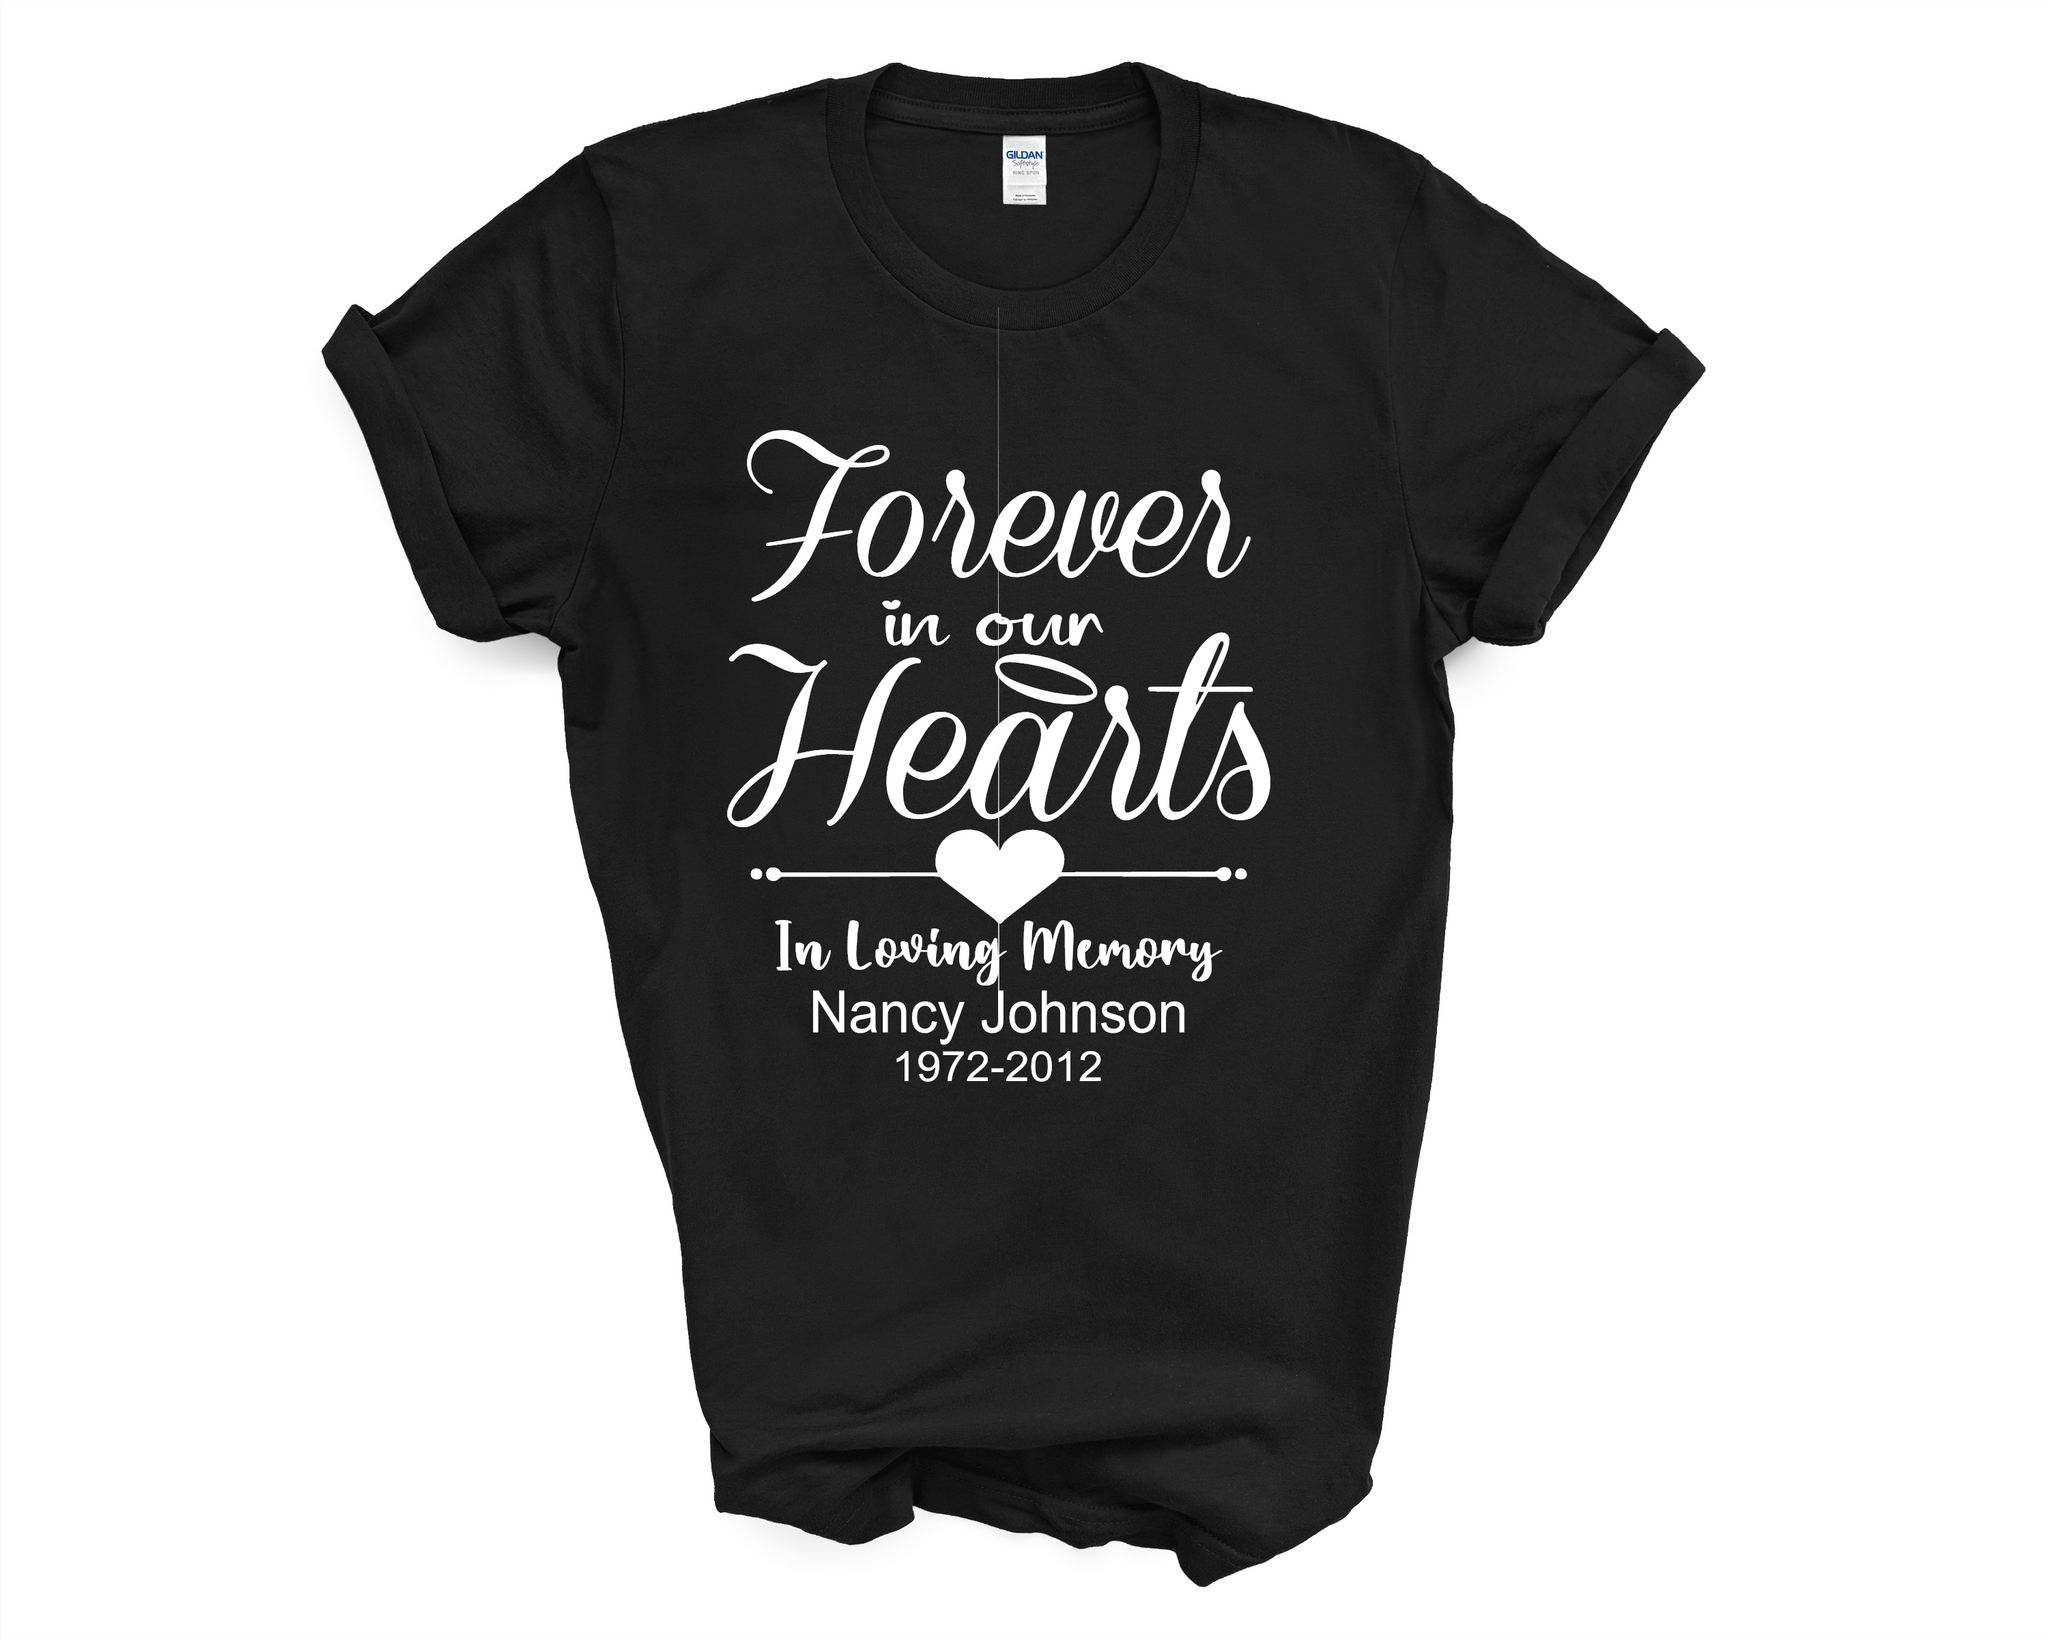 WRYHT for 6 memorial T-shirt | kensysgas.com